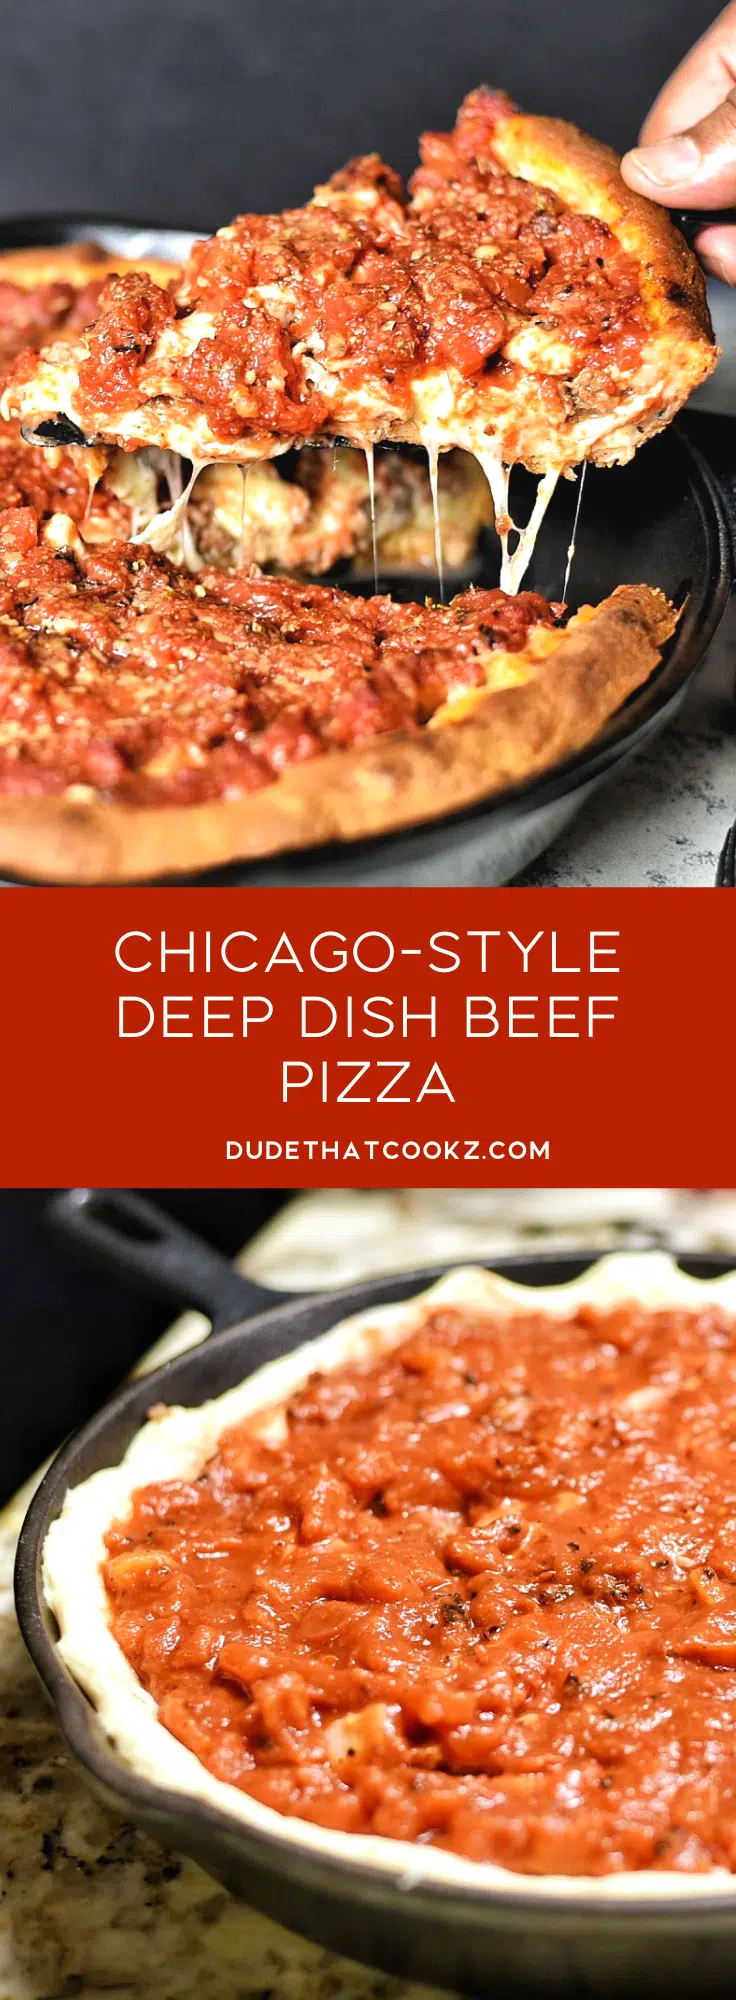 Deep Dish Beef Pizza